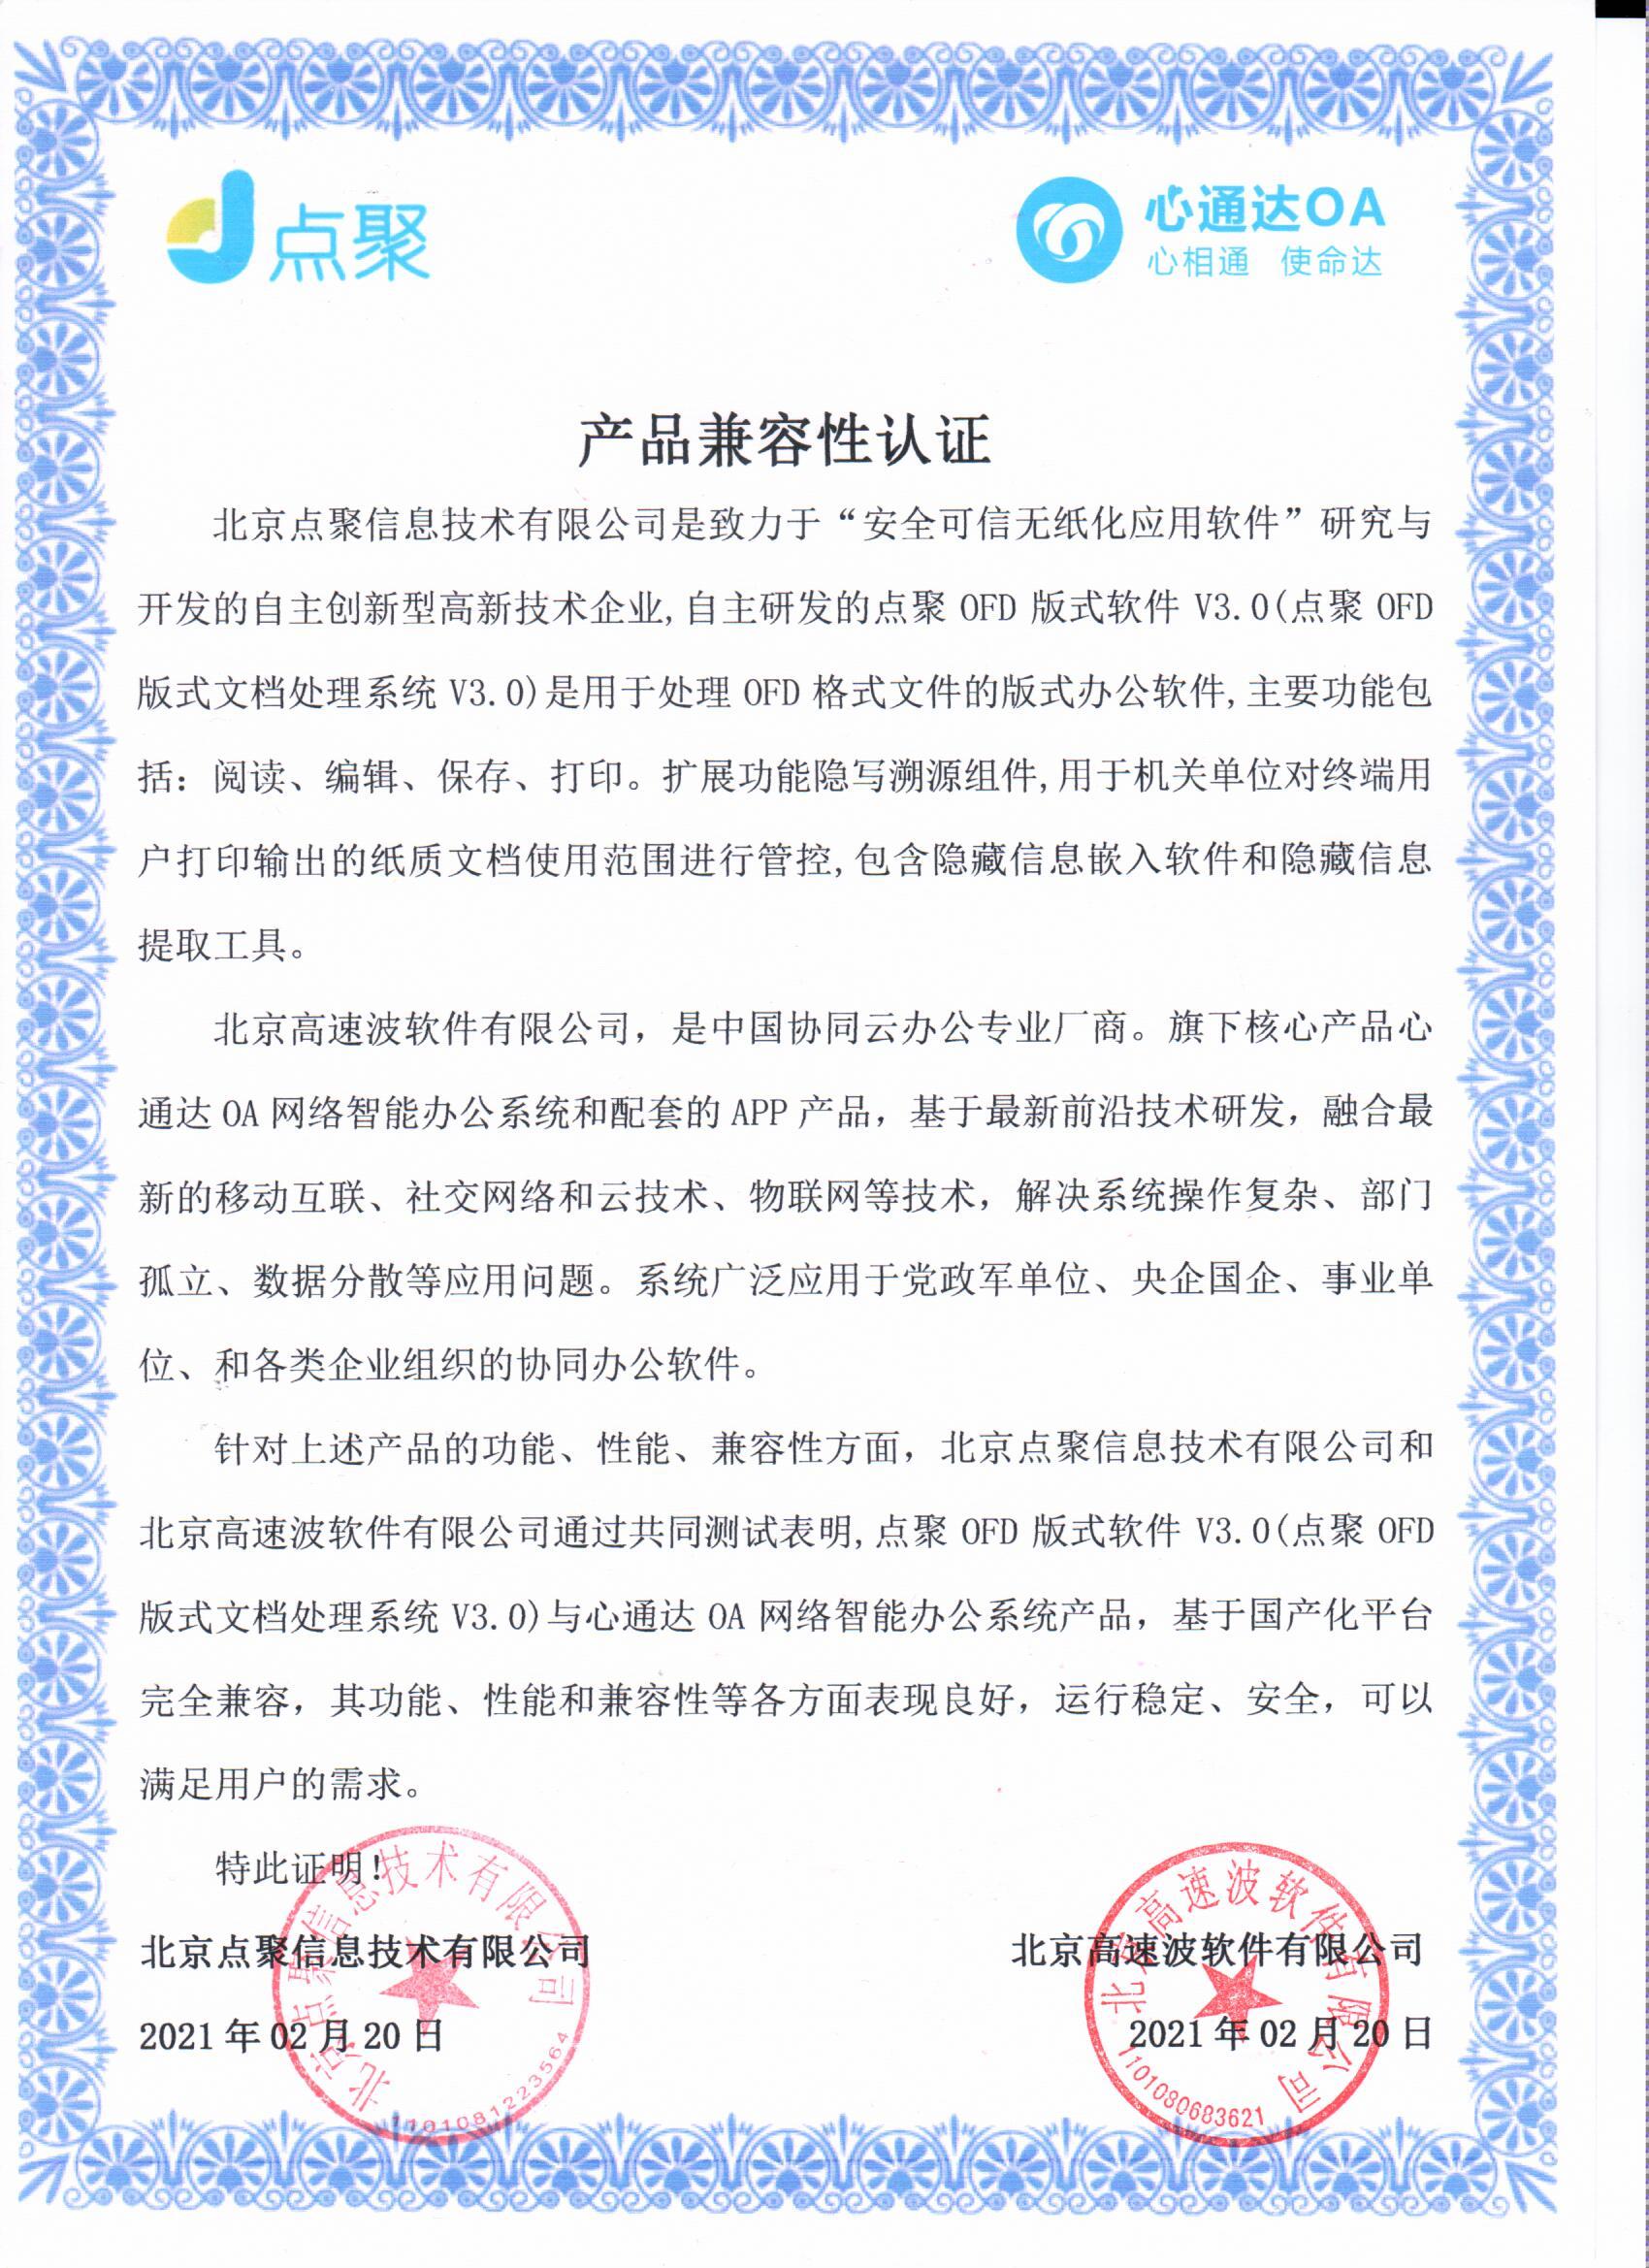 北京点聚信息技术有限公司v3.0兼容互认证明